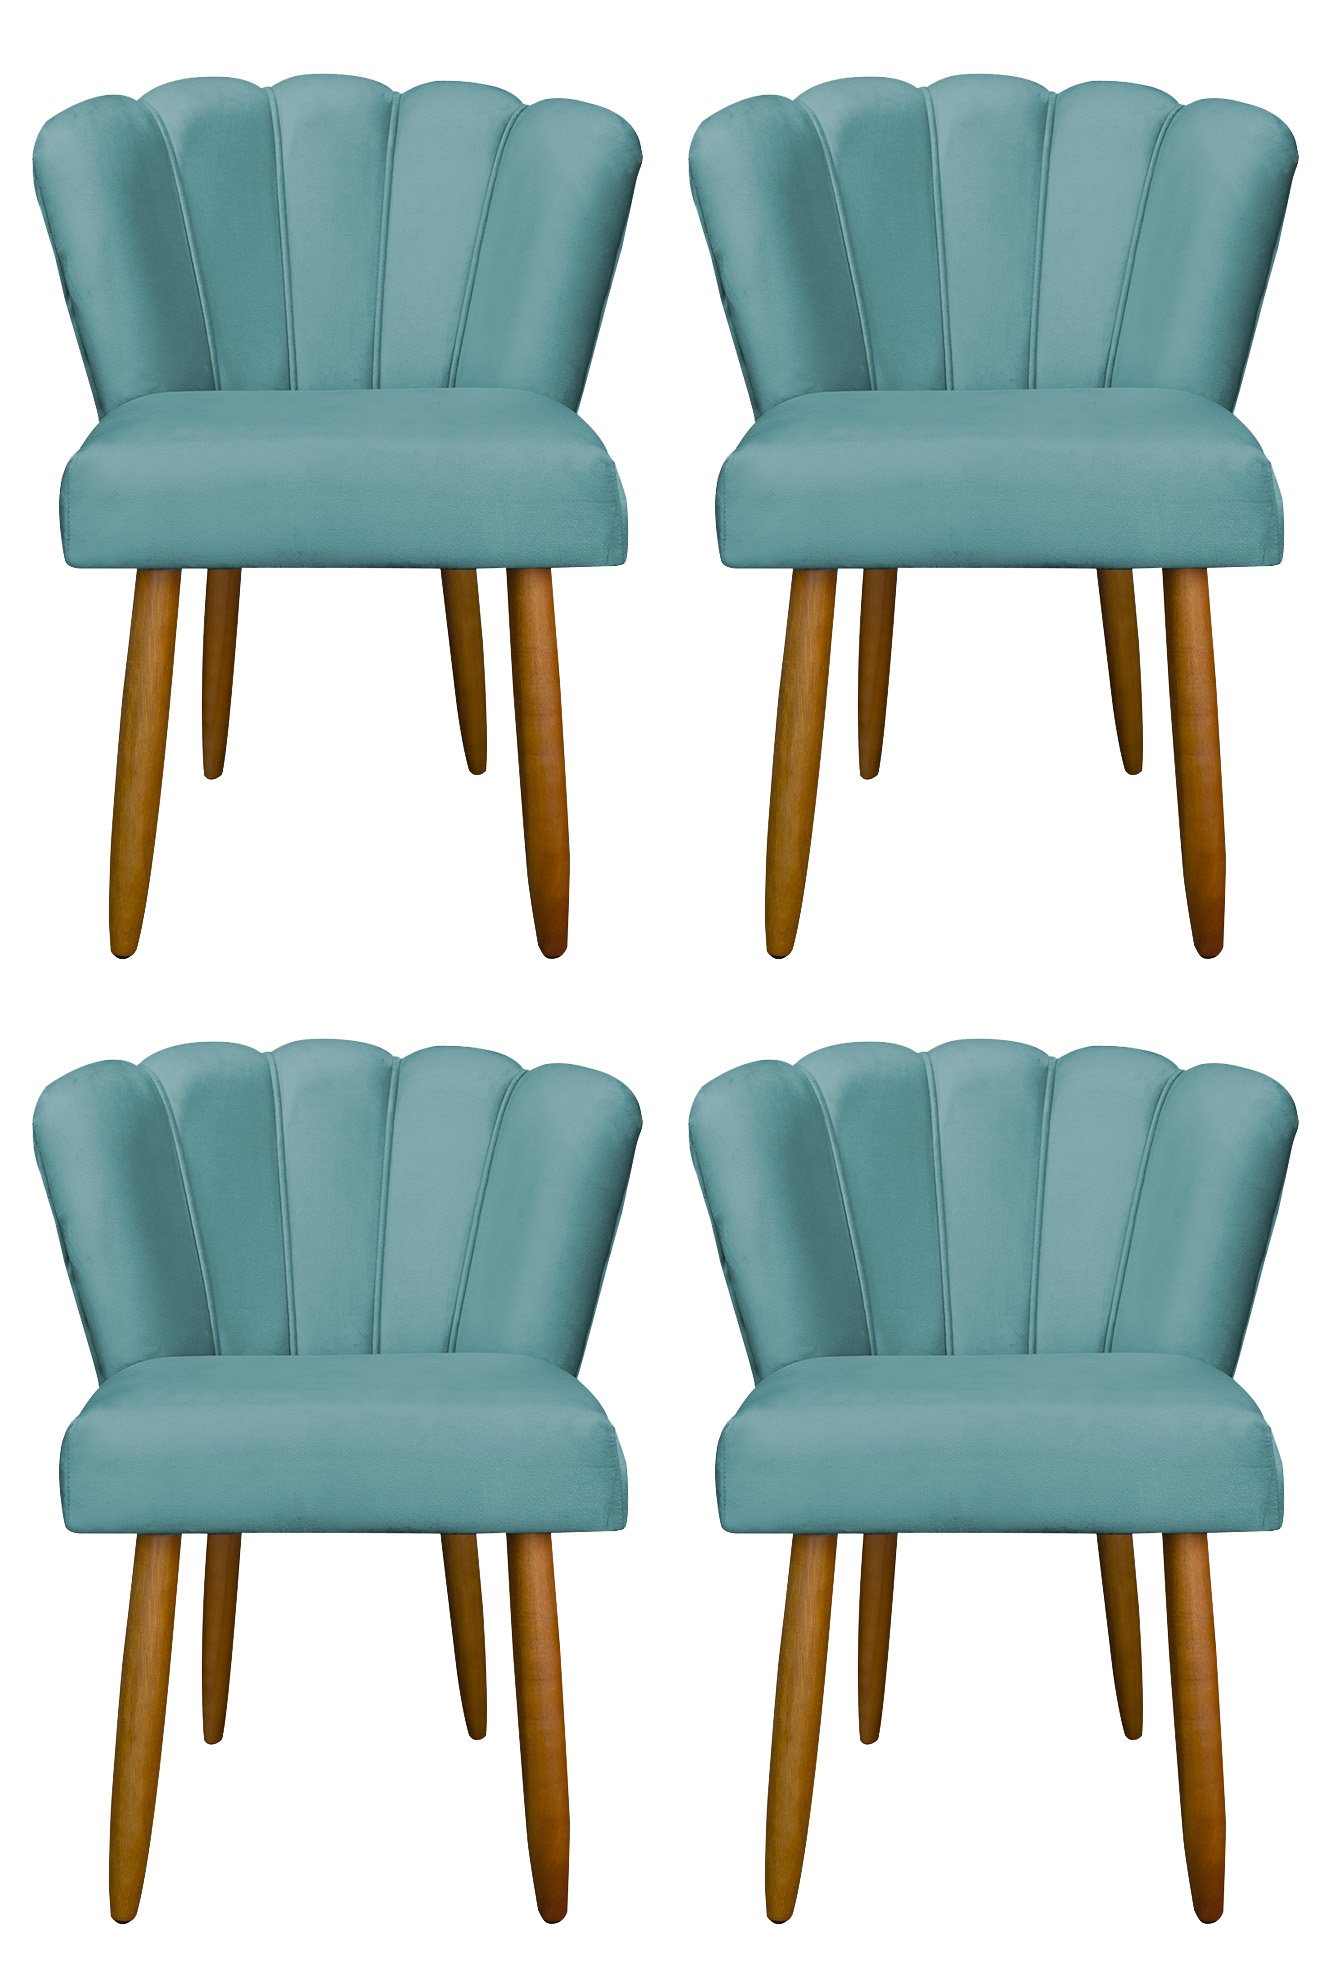 Kit 4 Cadeira para Mesa de Jantar Modelo Flor Suede:azul Turquesa - 1